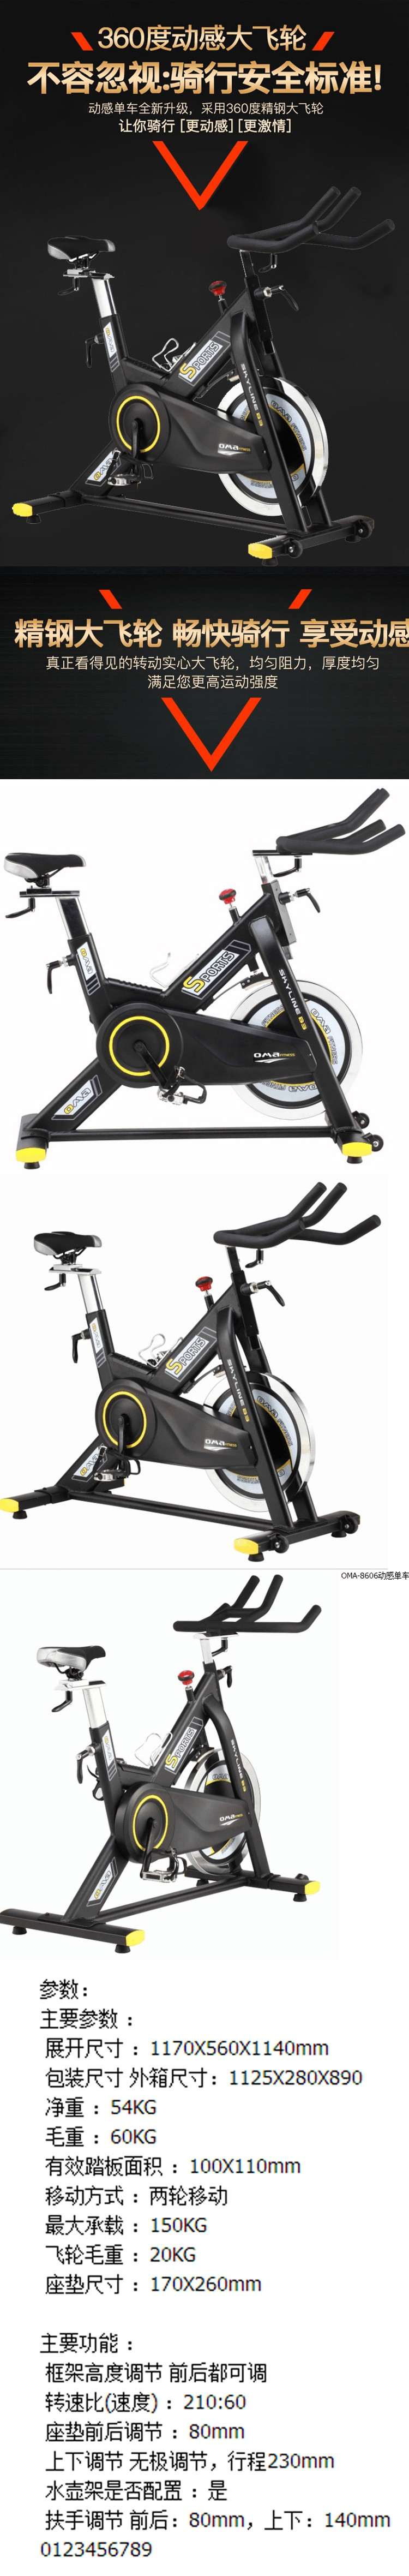 【仅限新乡地区销售】奥玛动感单车OMA-8606动感单车超静音家用室内健身器材运动健身车